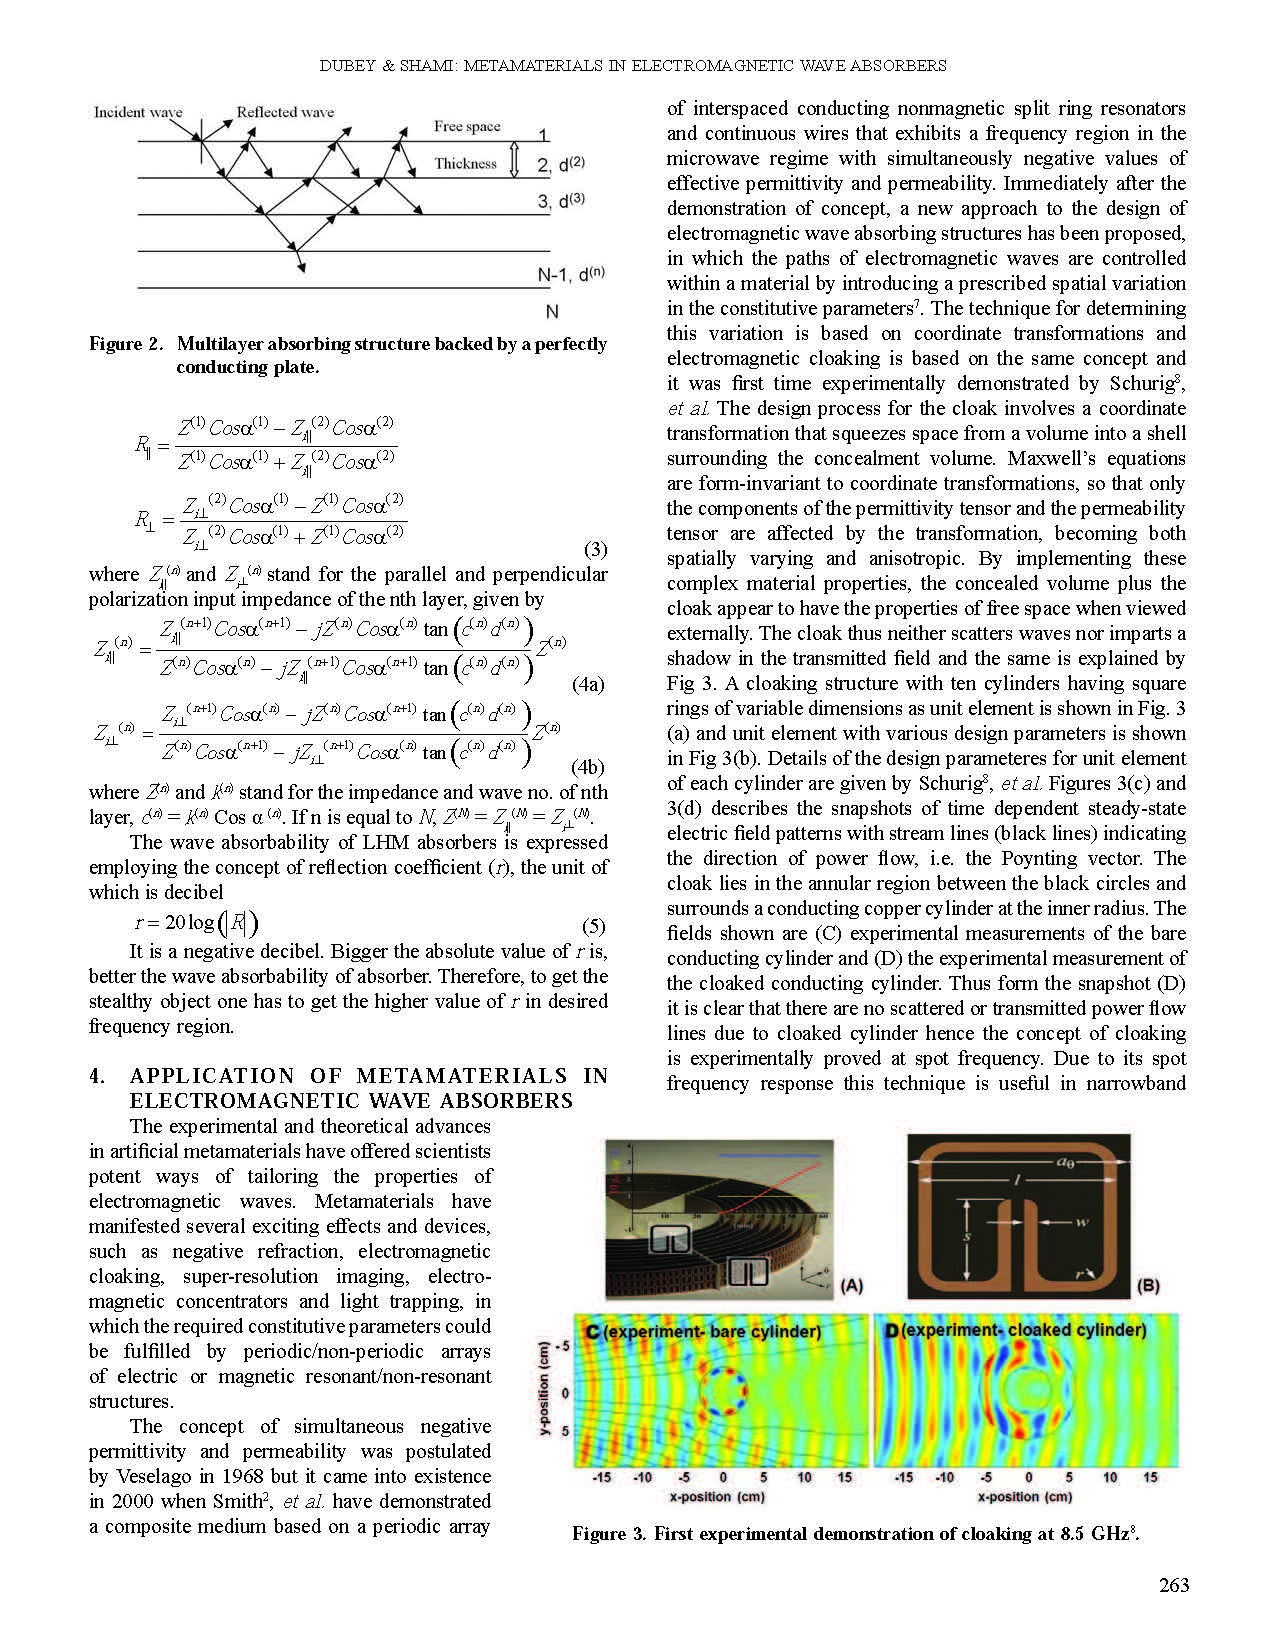 Metamaterials inEM wave absorbers_Page_3.jpg